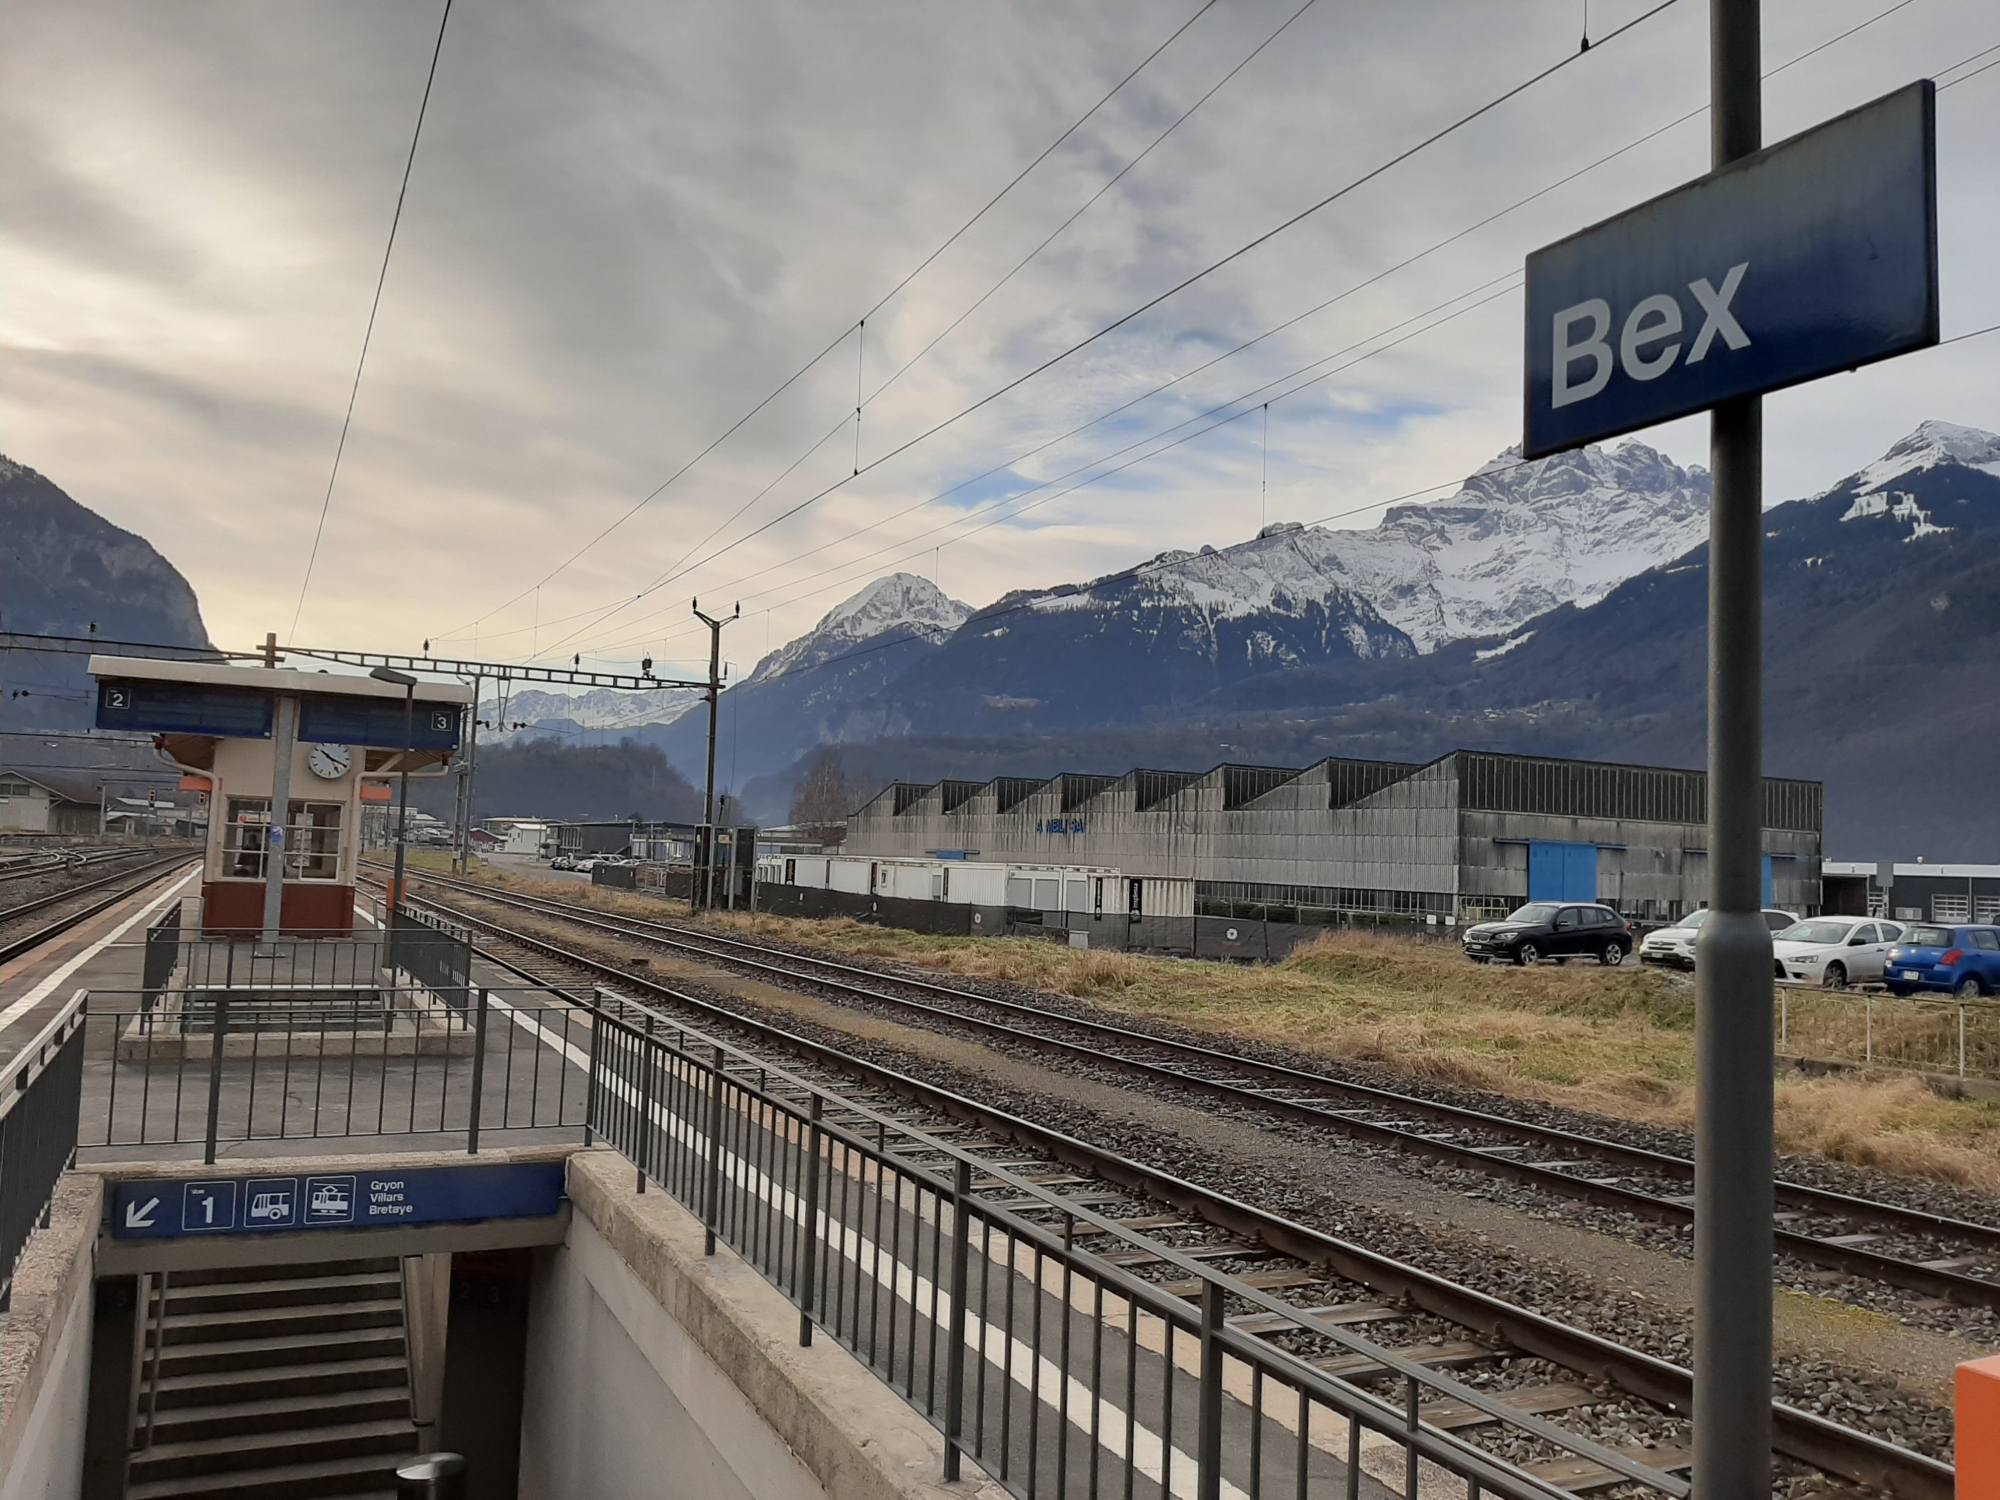 L'InterRegio qui mène au Valais ne s'arrête à Bex qu'une fois par jour.